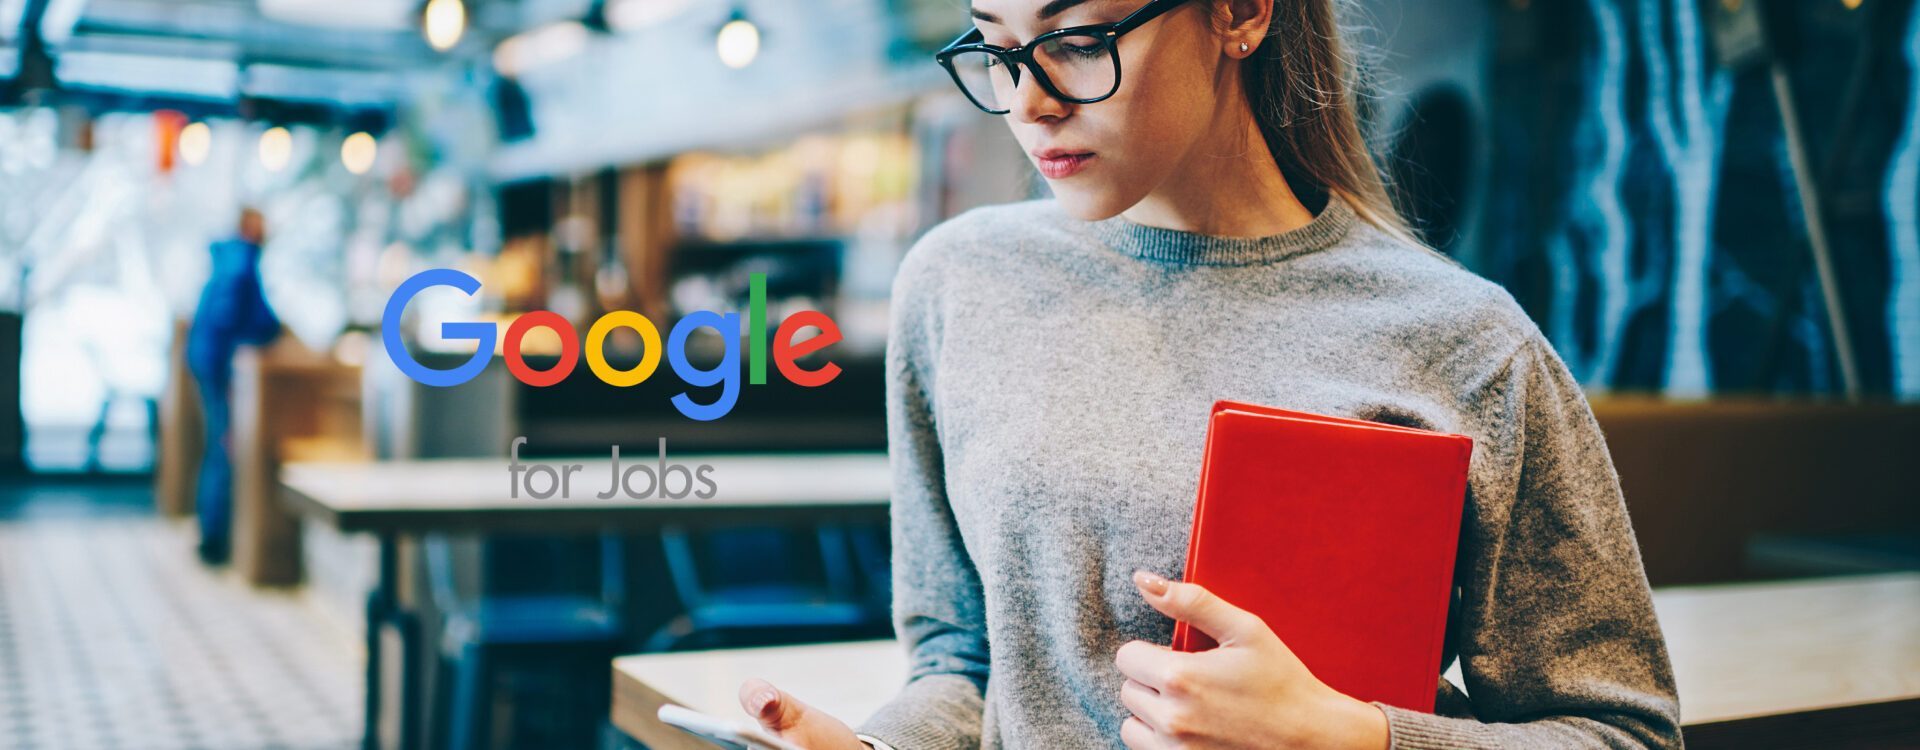 Google Jobs integratie